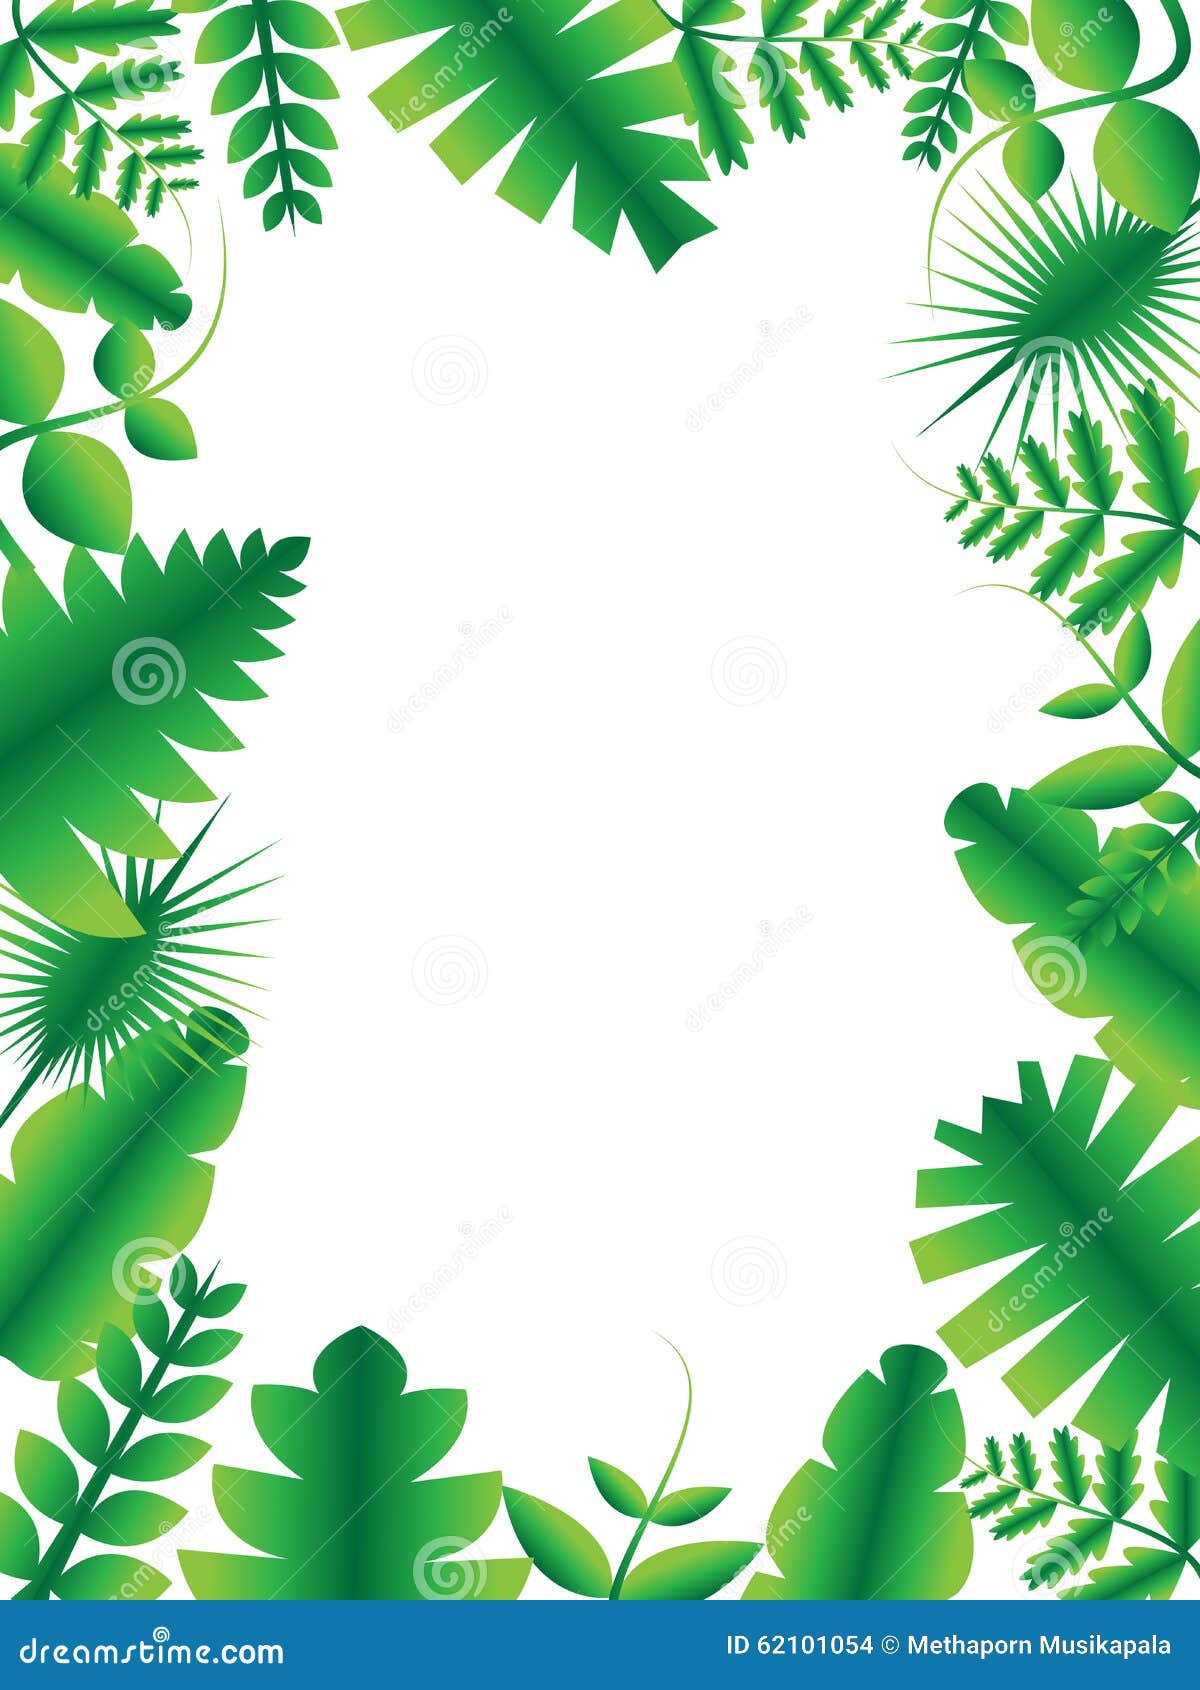 Green Leaf Frame Vector and Illustration 02 Stock Vector - Illustration ...